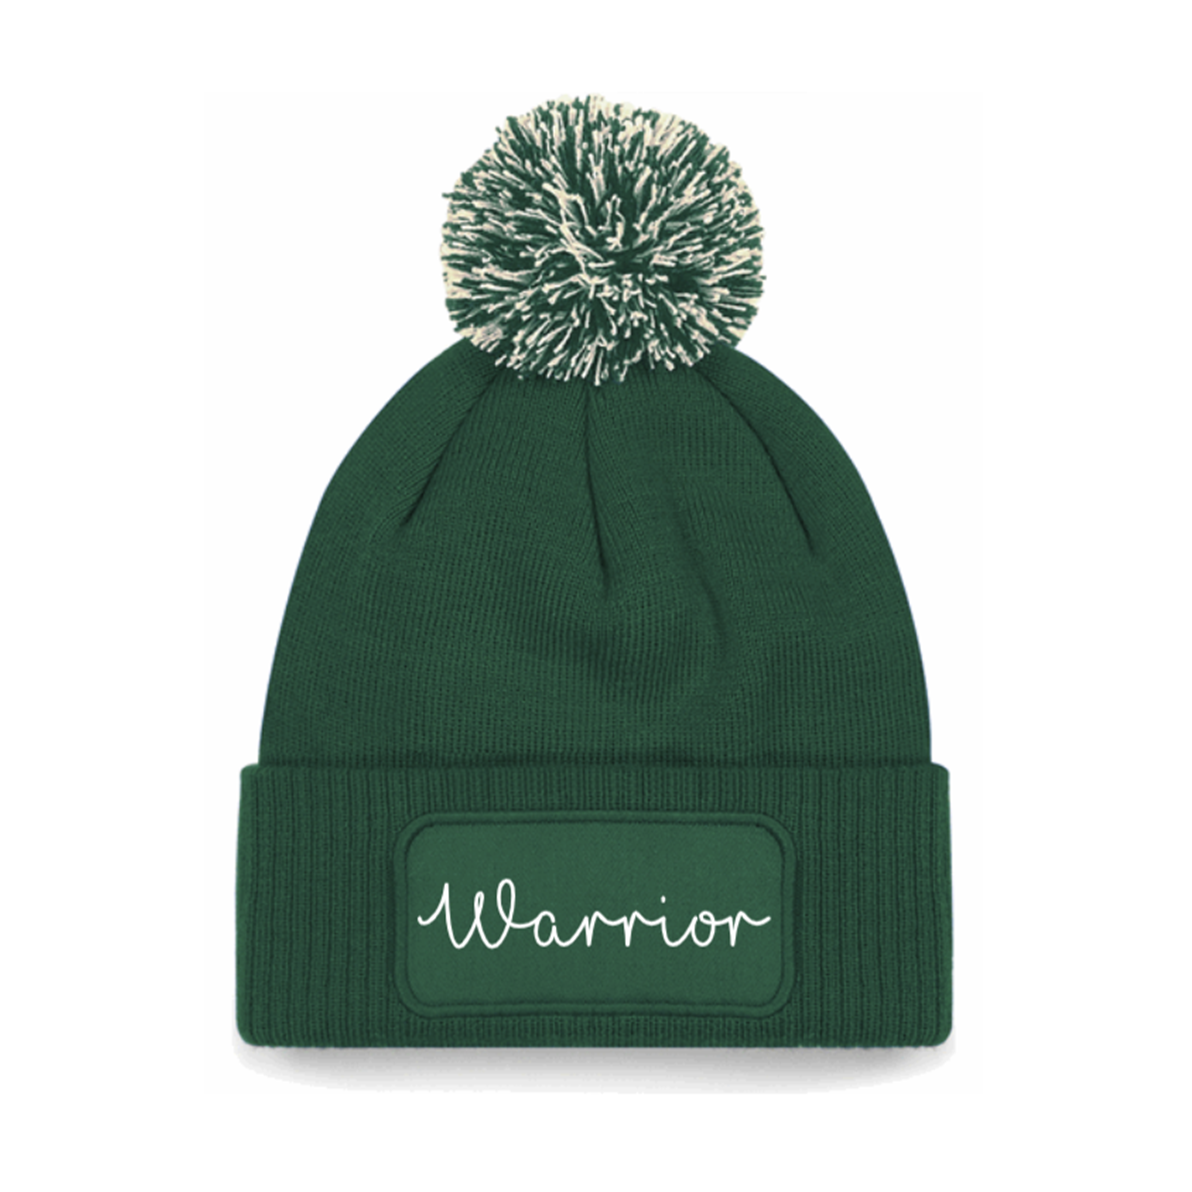 Warrior Beanie Hat